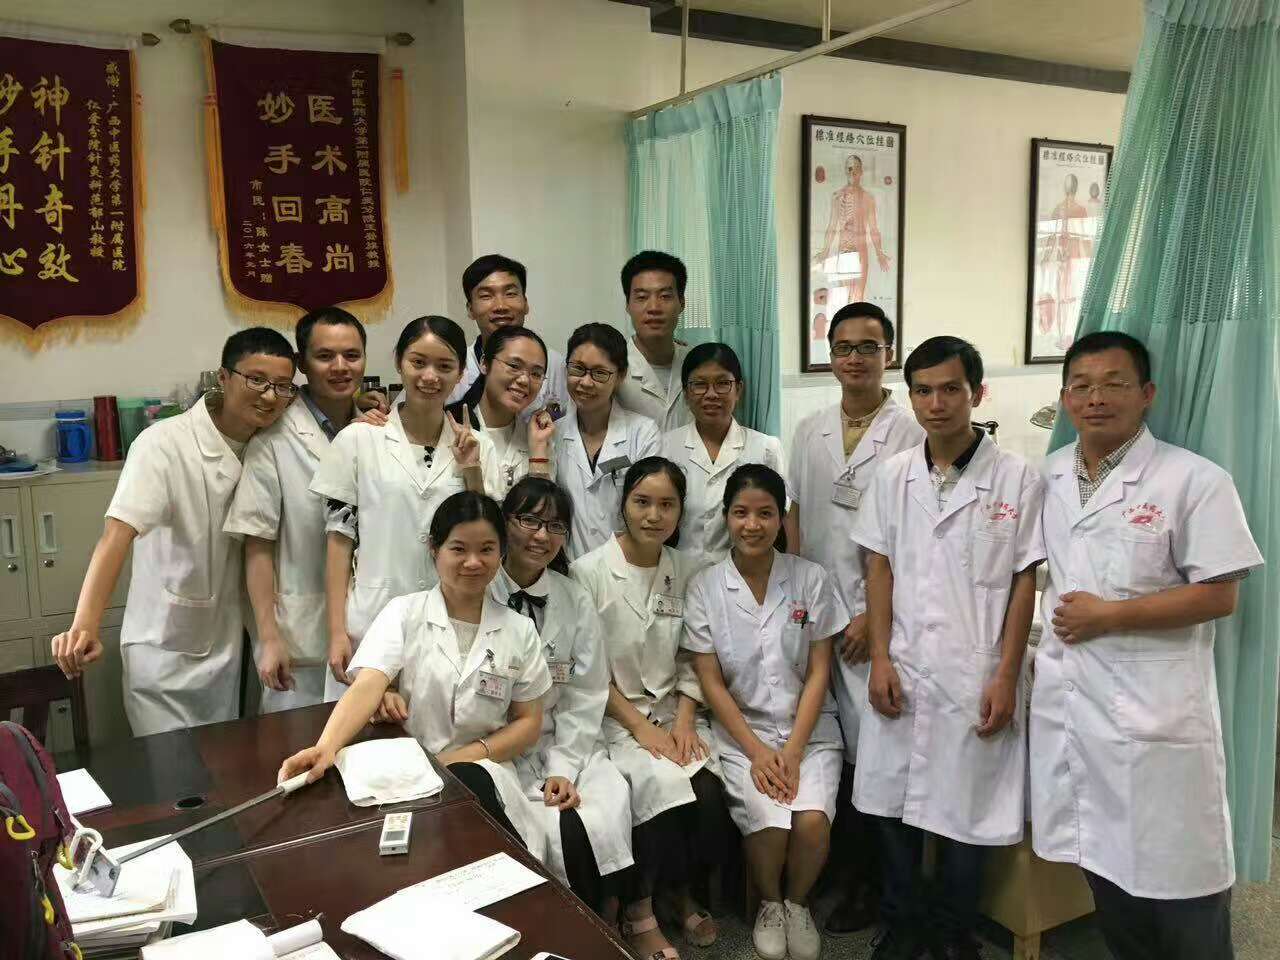 贺州市正规中医针灸培训学校首家国家指定针灸技能实训学习基地